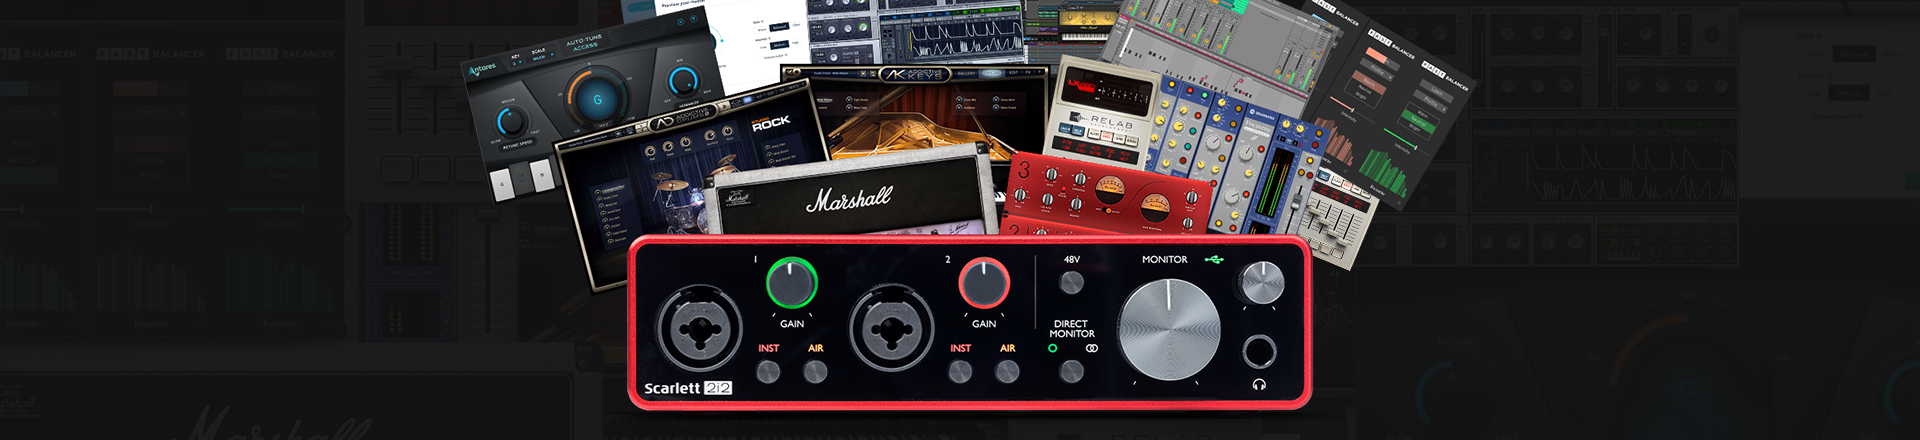 Starannie dobrany pakiet oprogramowania do produkcji muzyki: Focusrite Hitmaker Expansion 3.0